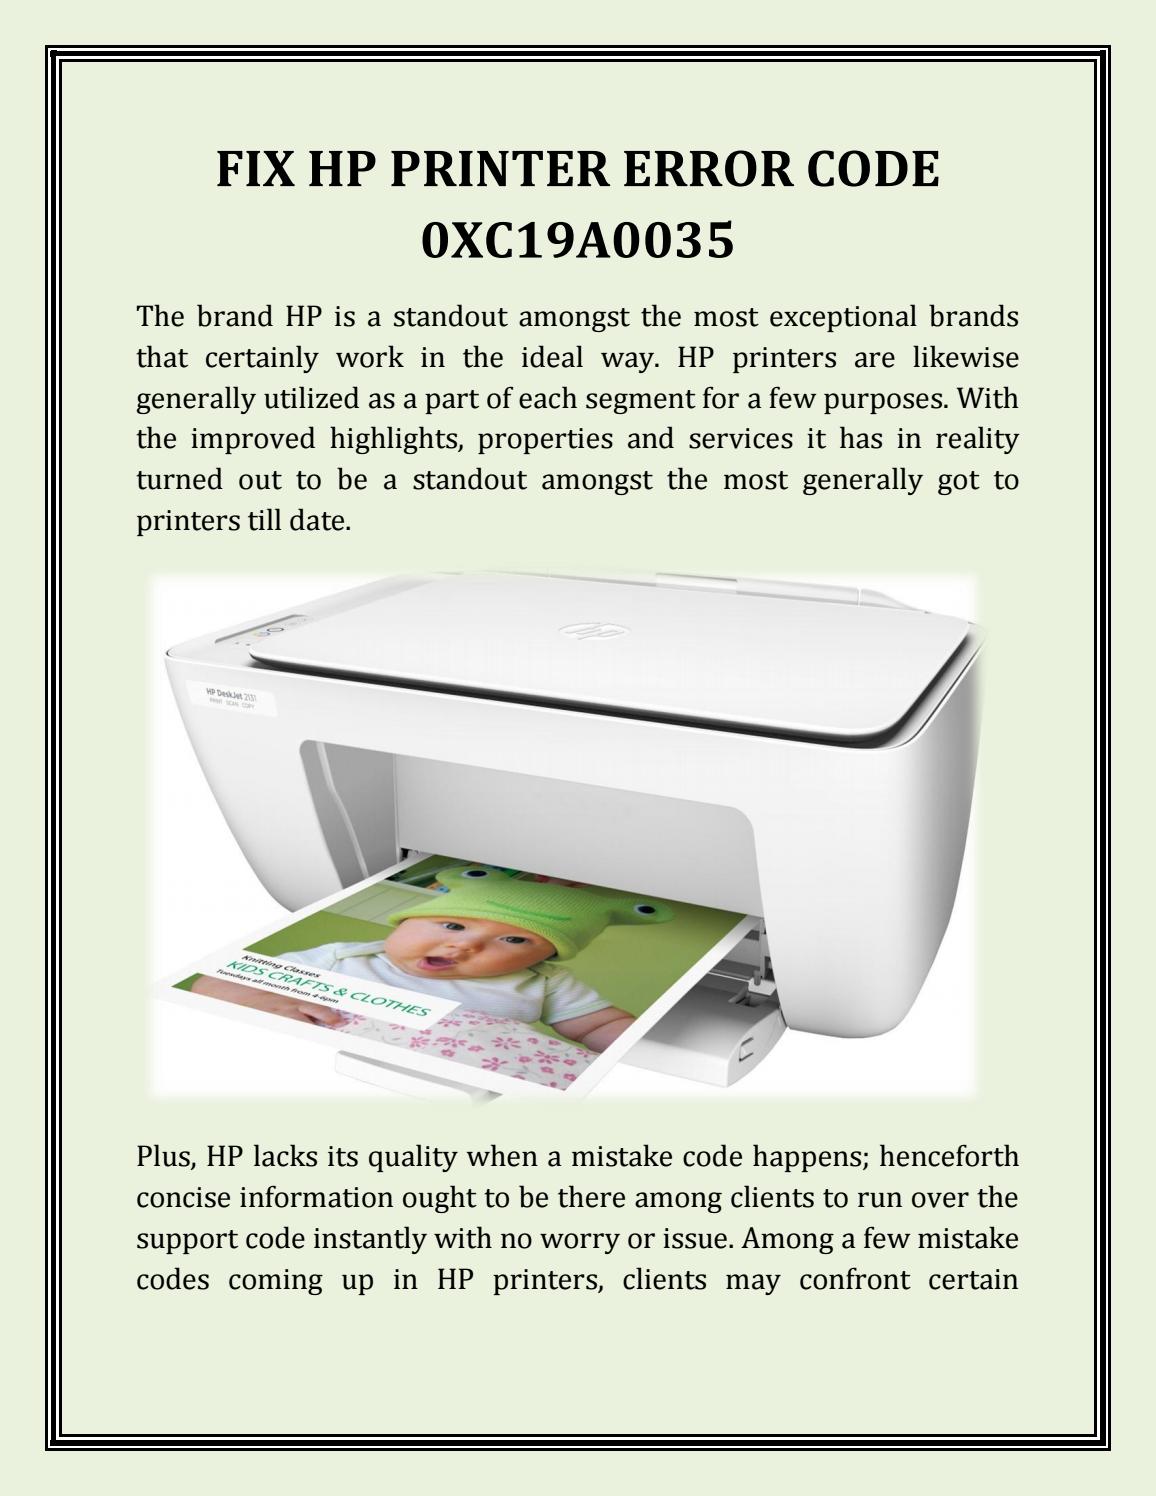 codice errore stampante fotografica hp oxc19a0035